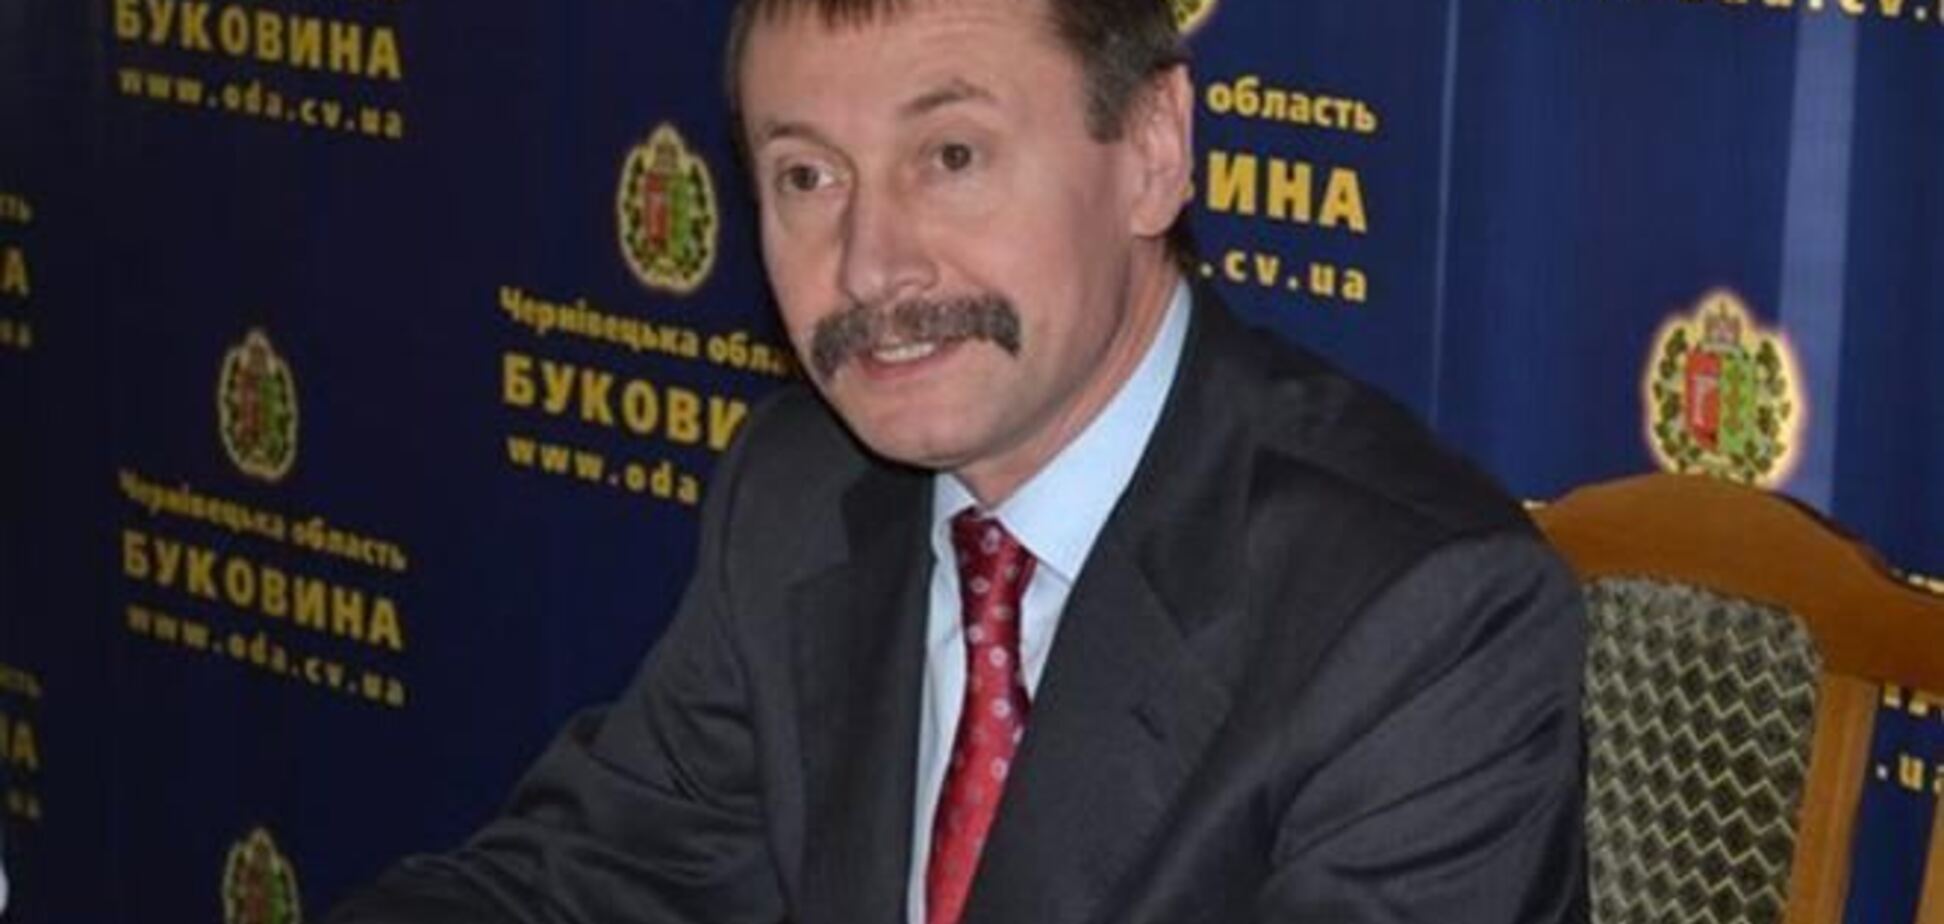 Черновицкого губернатора забросали яйцами и заставили написать заявление об отставке